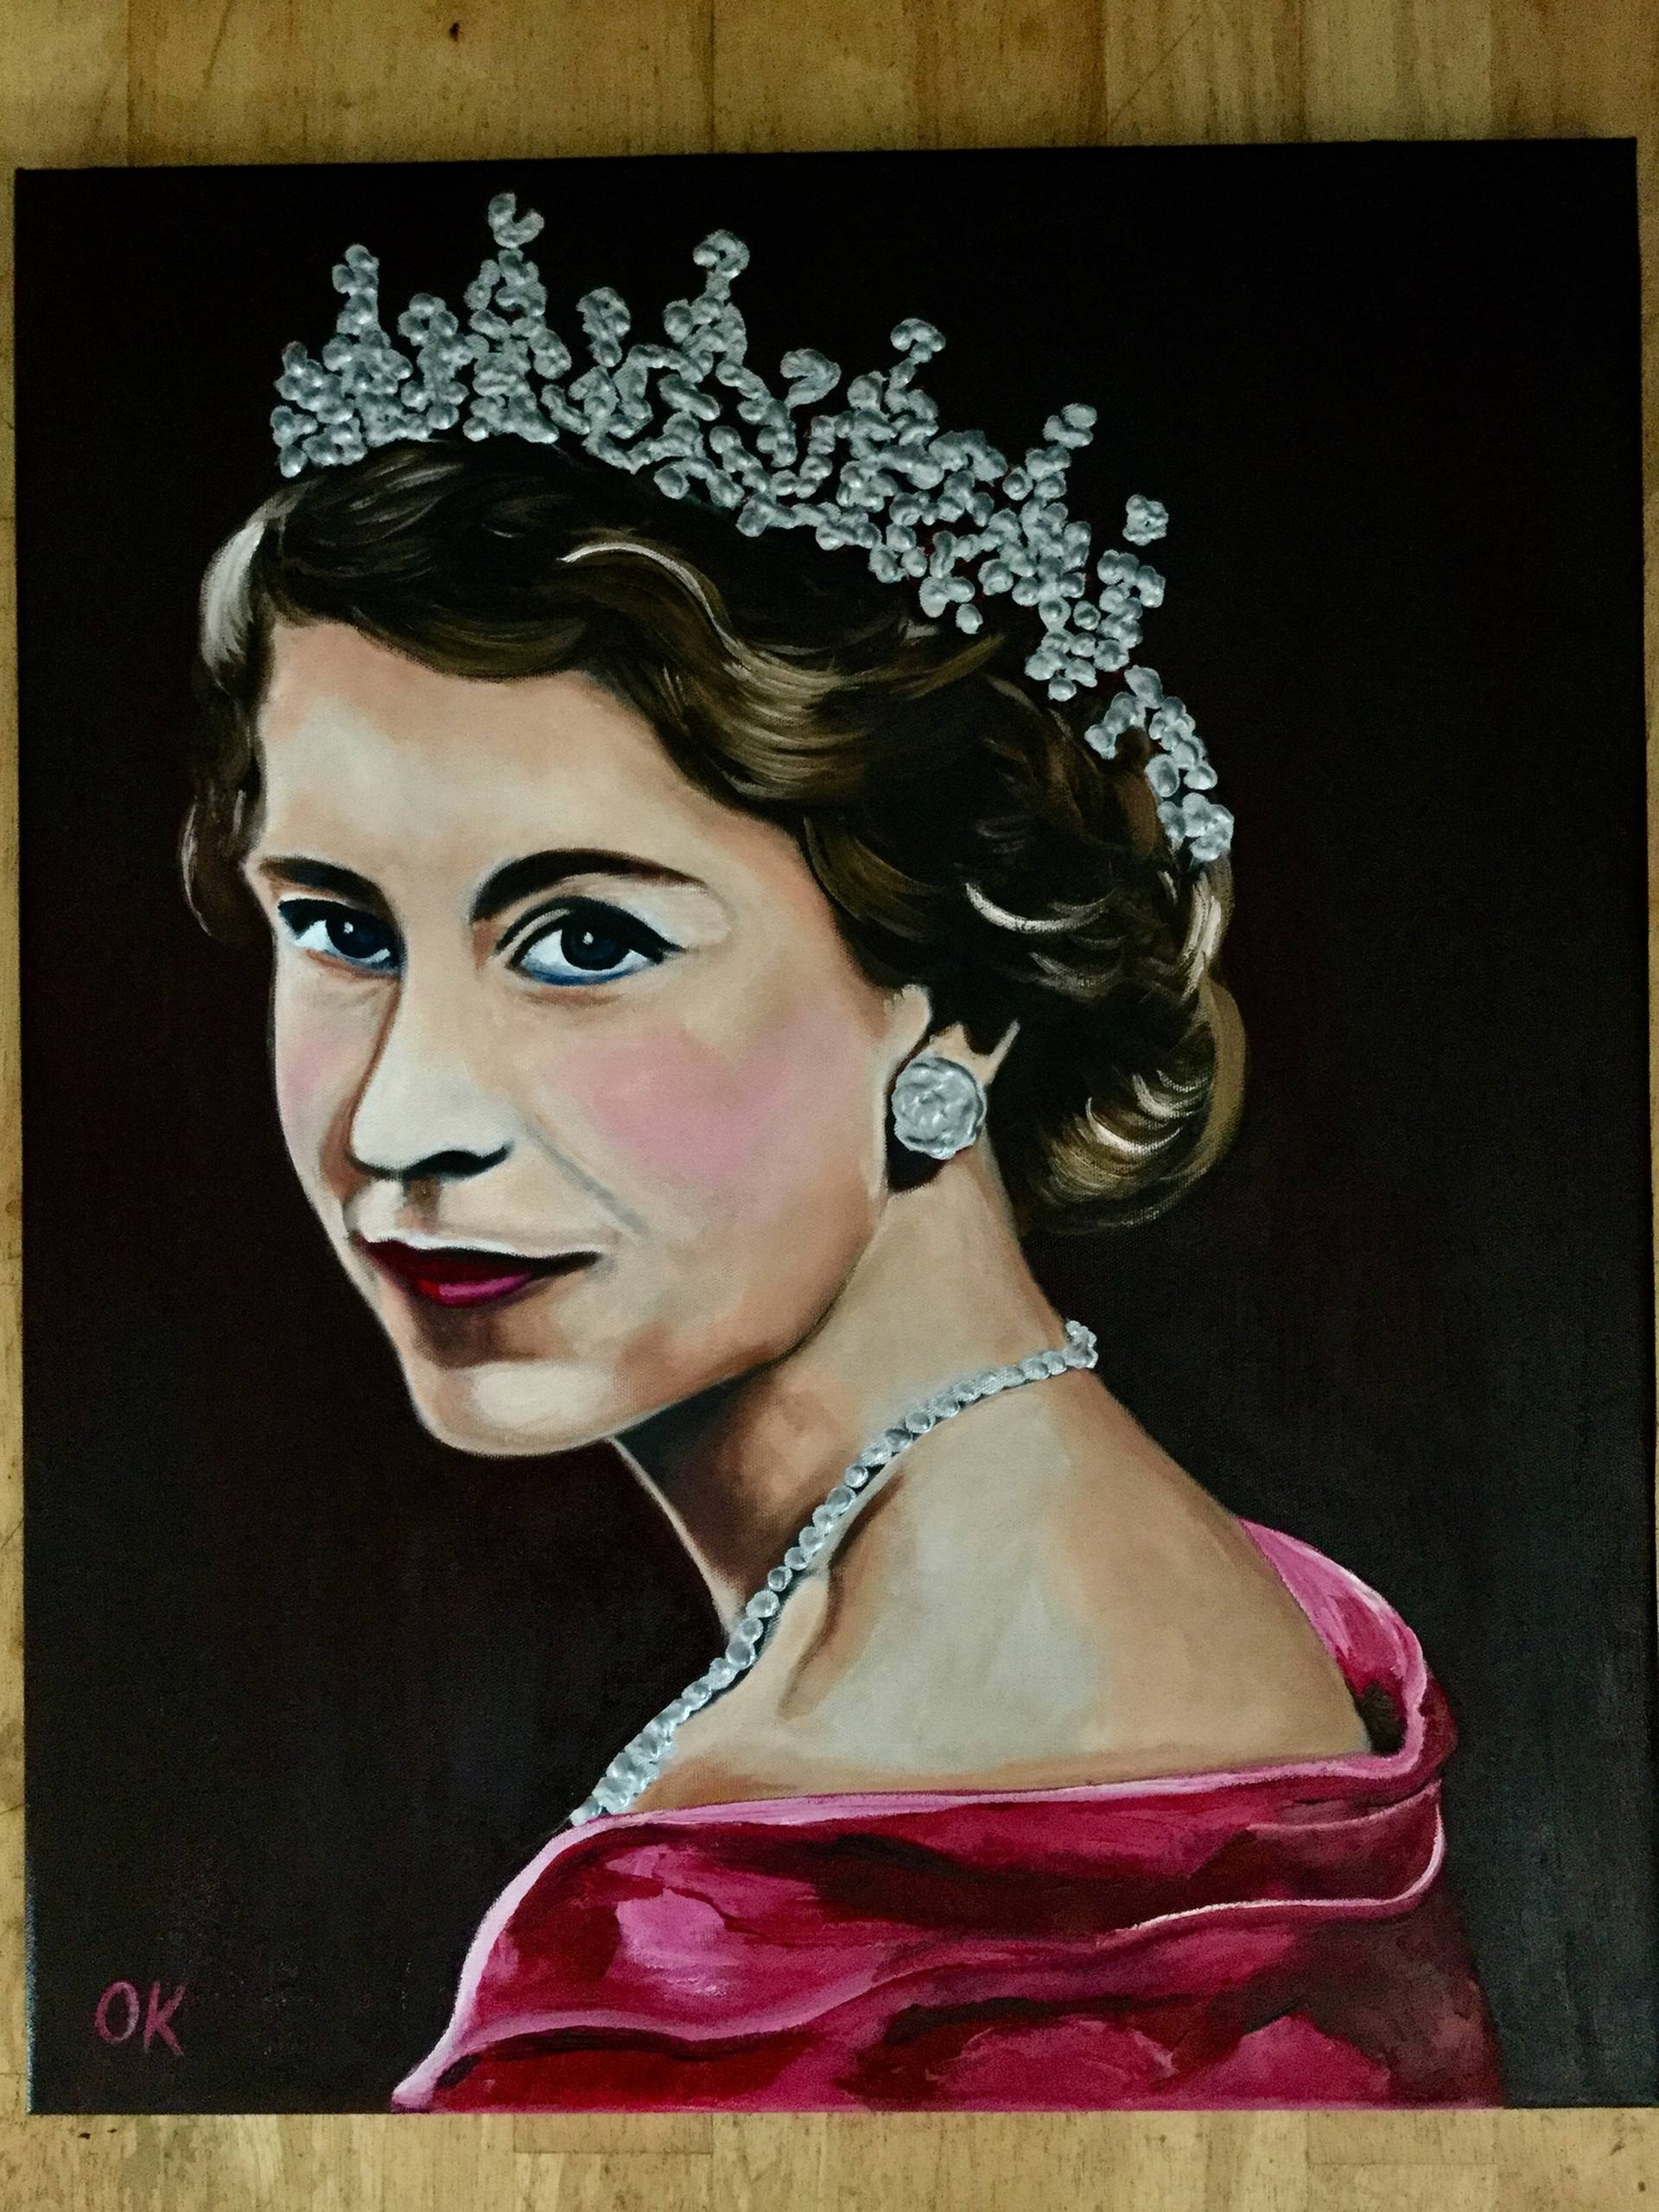 young queen elizabeth ii portrait